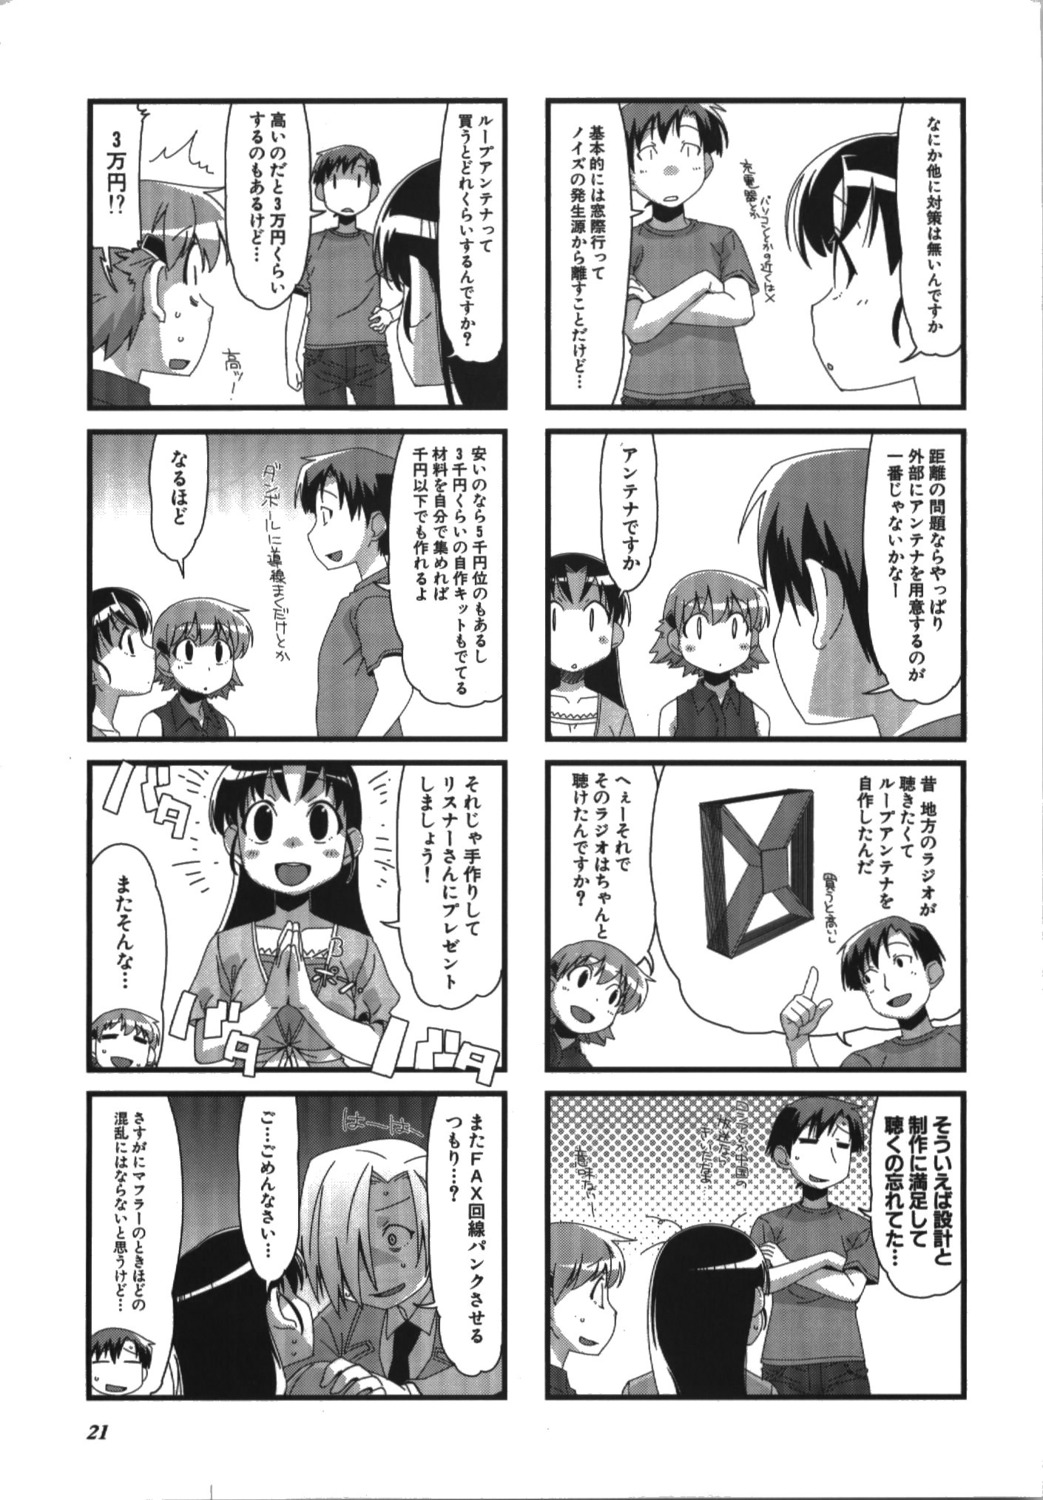 4koma manga_time_kirara monochrome shibata_tsubakurou